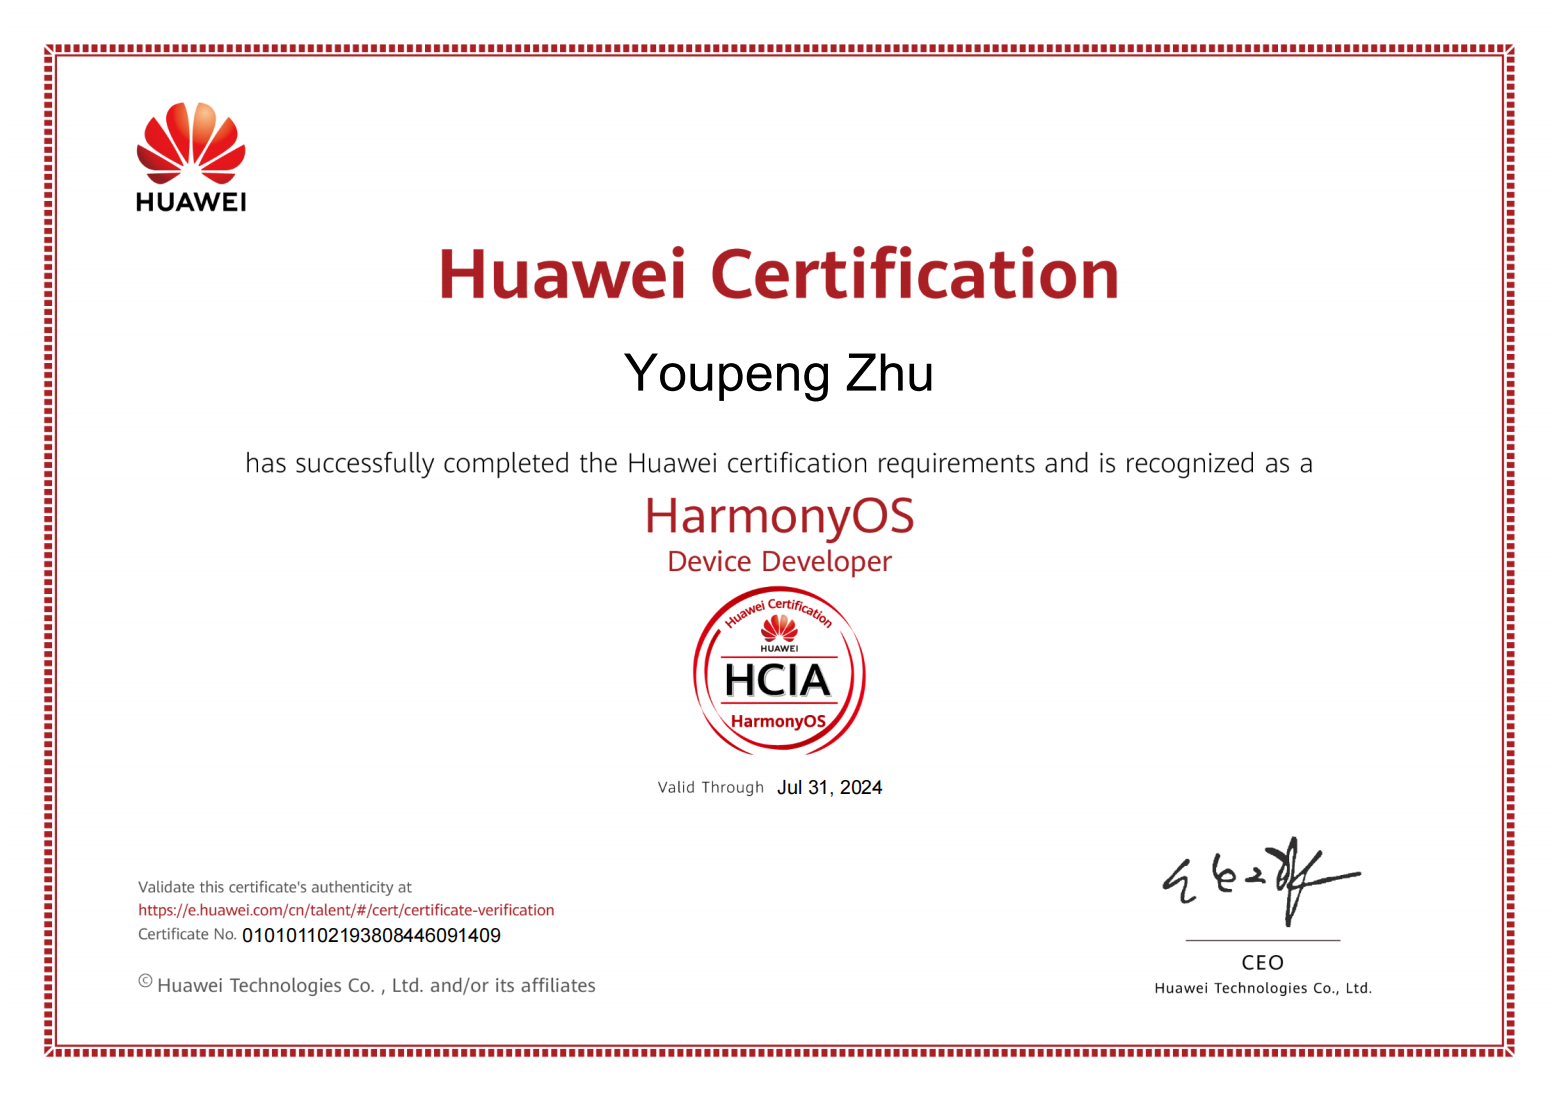 鸿蒙认证HCIA-HarmonyOS证书到手-开源基础软件社区